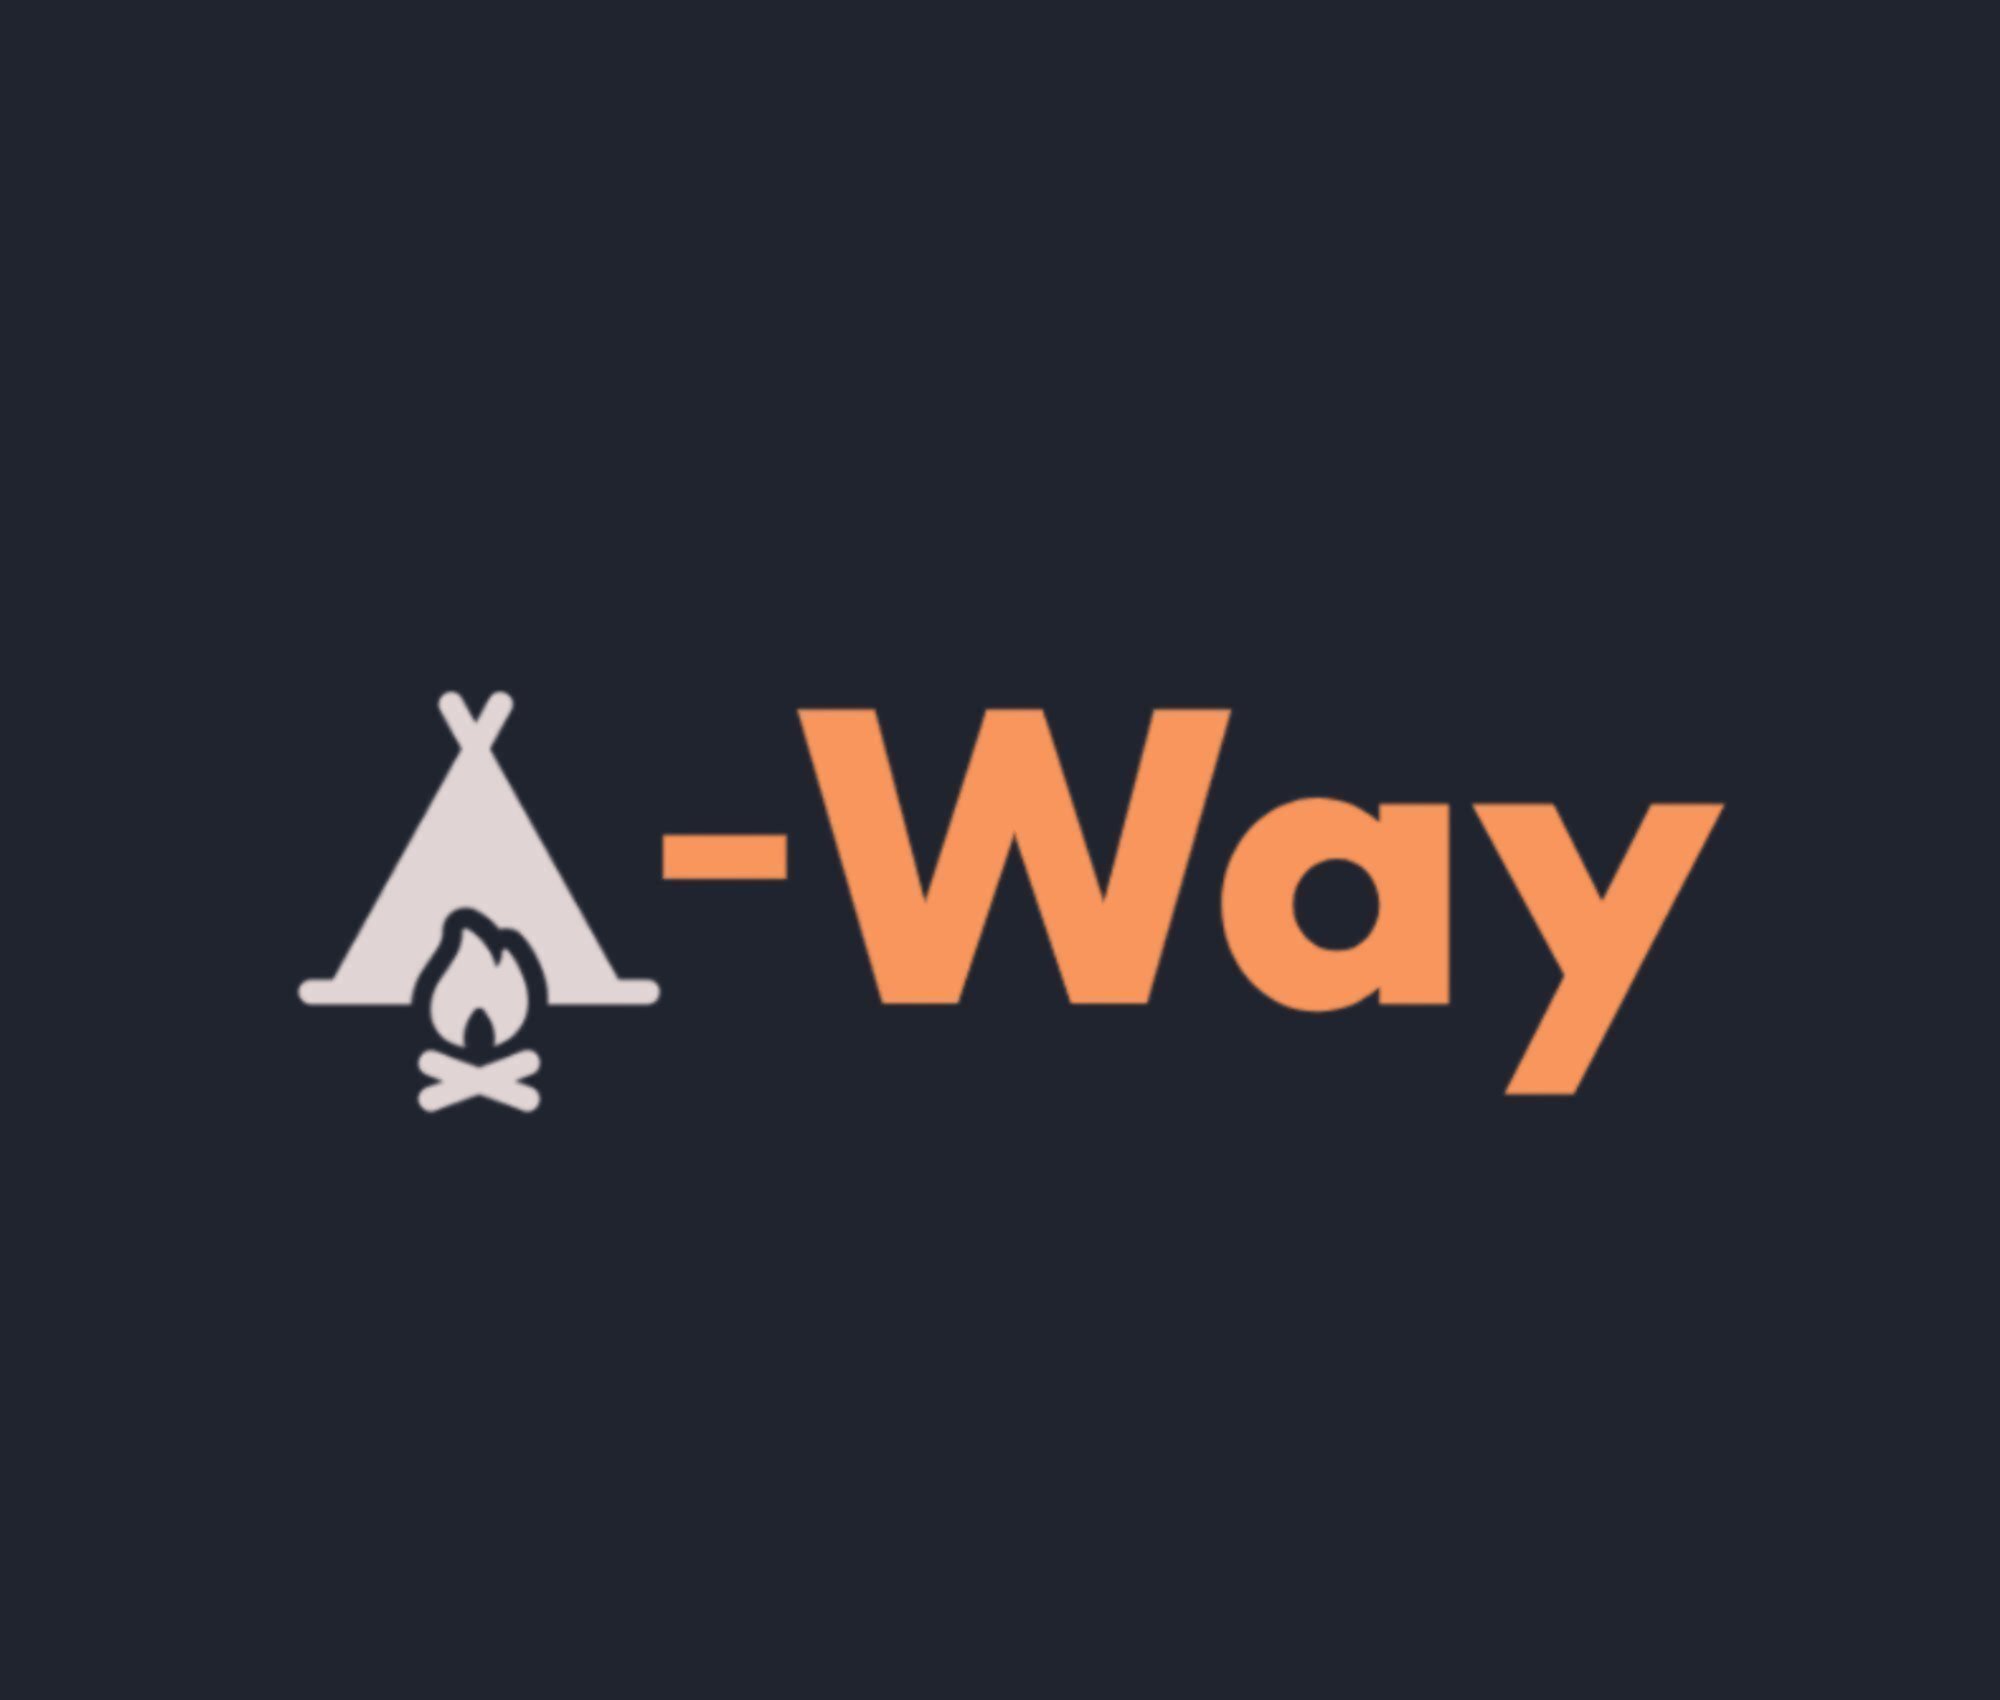 A-Way